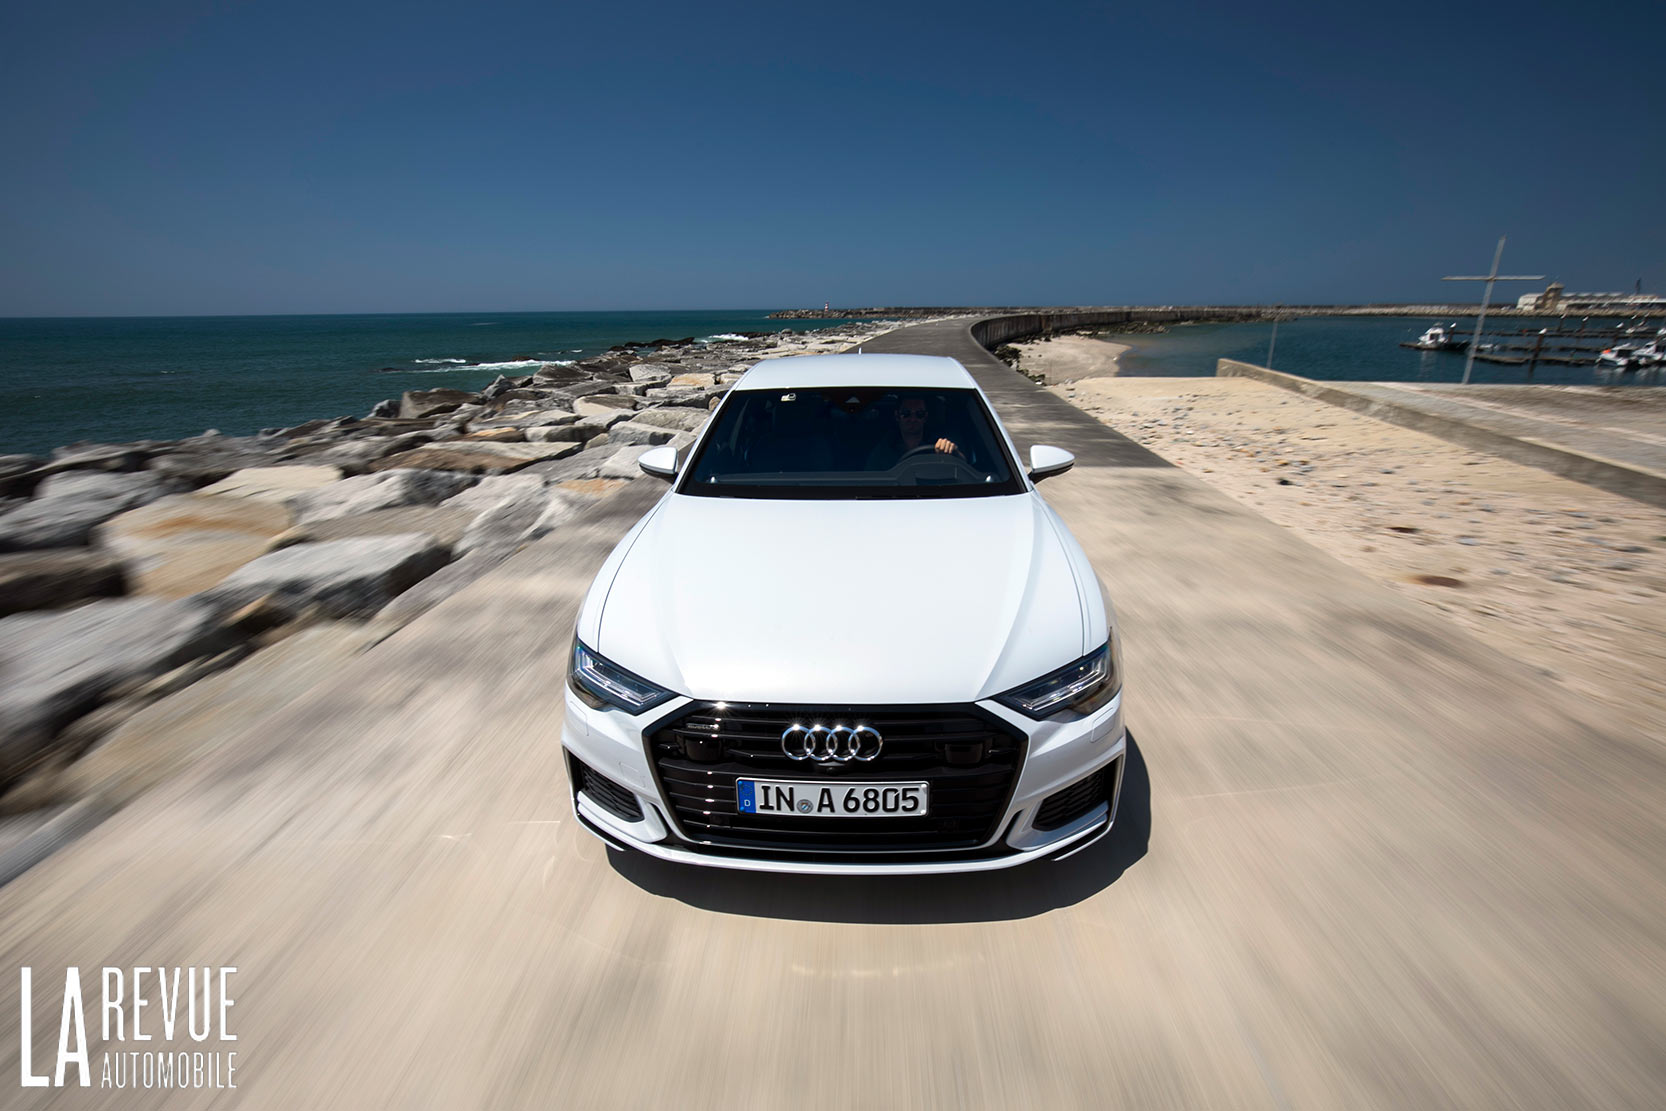 Image principale de l'actu: Essai nouvelle Audi A6 : de la haute technologie